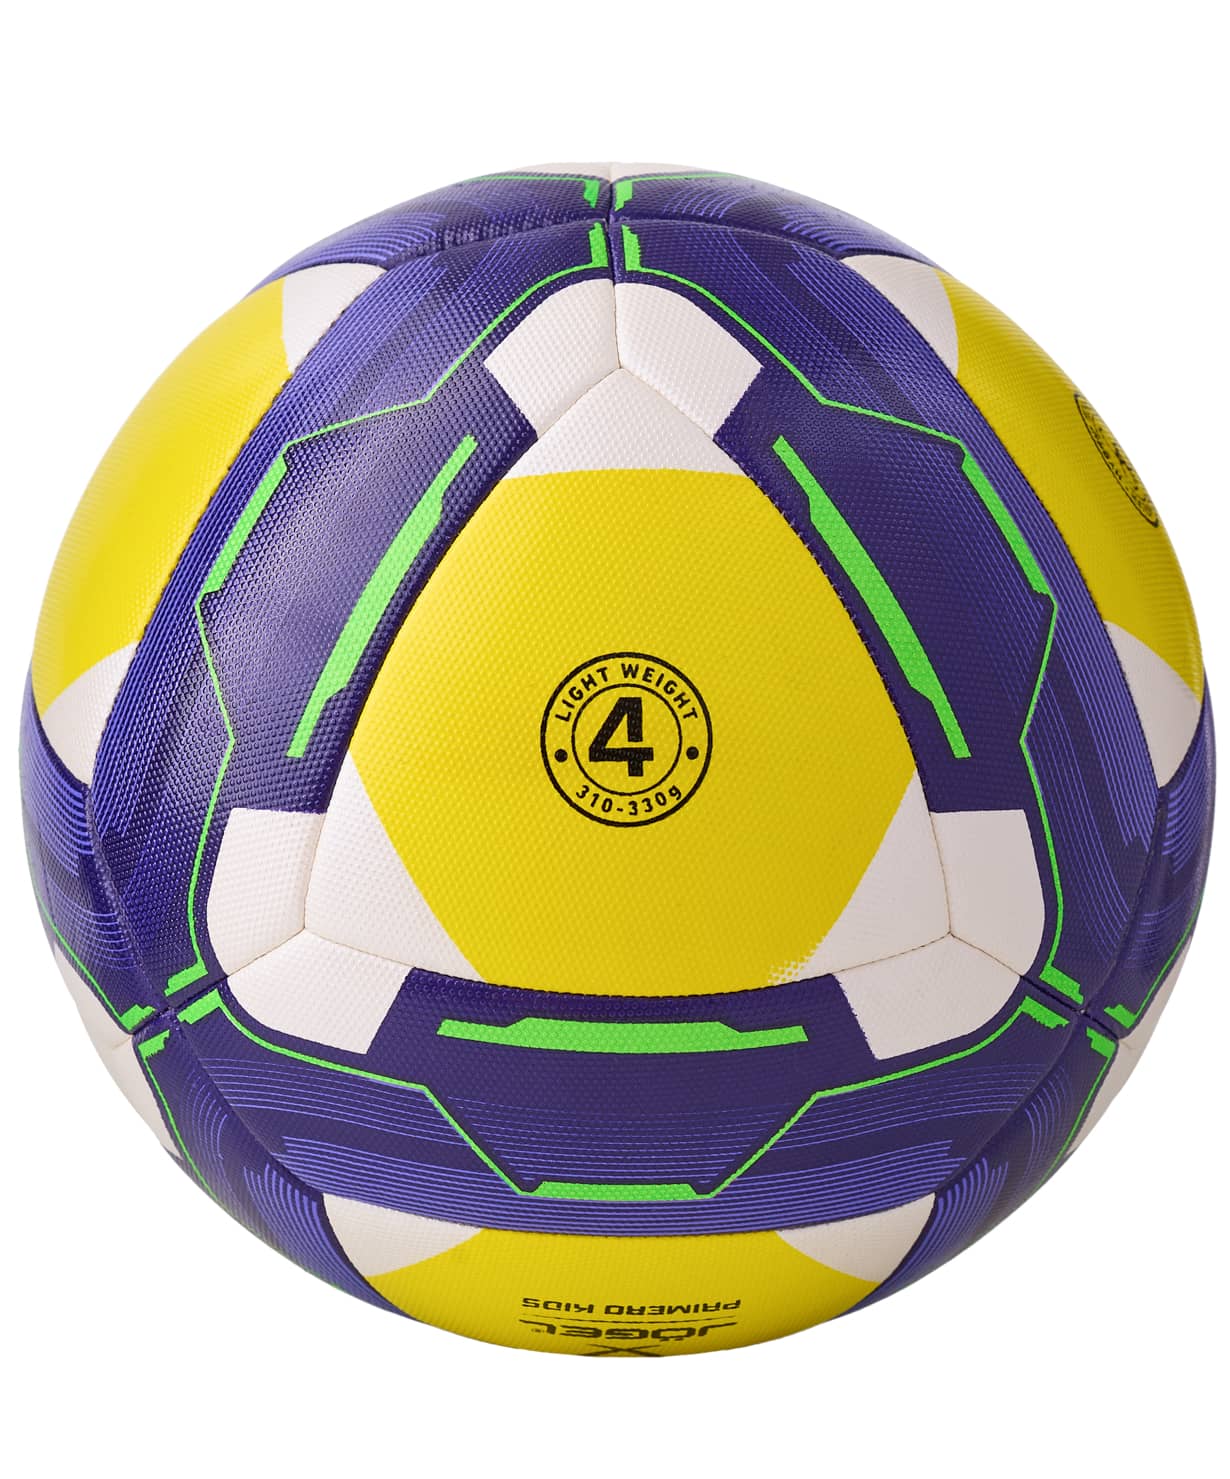 фото Jögel Primero KIDS мяч футбольный  размер 4 Football-54 